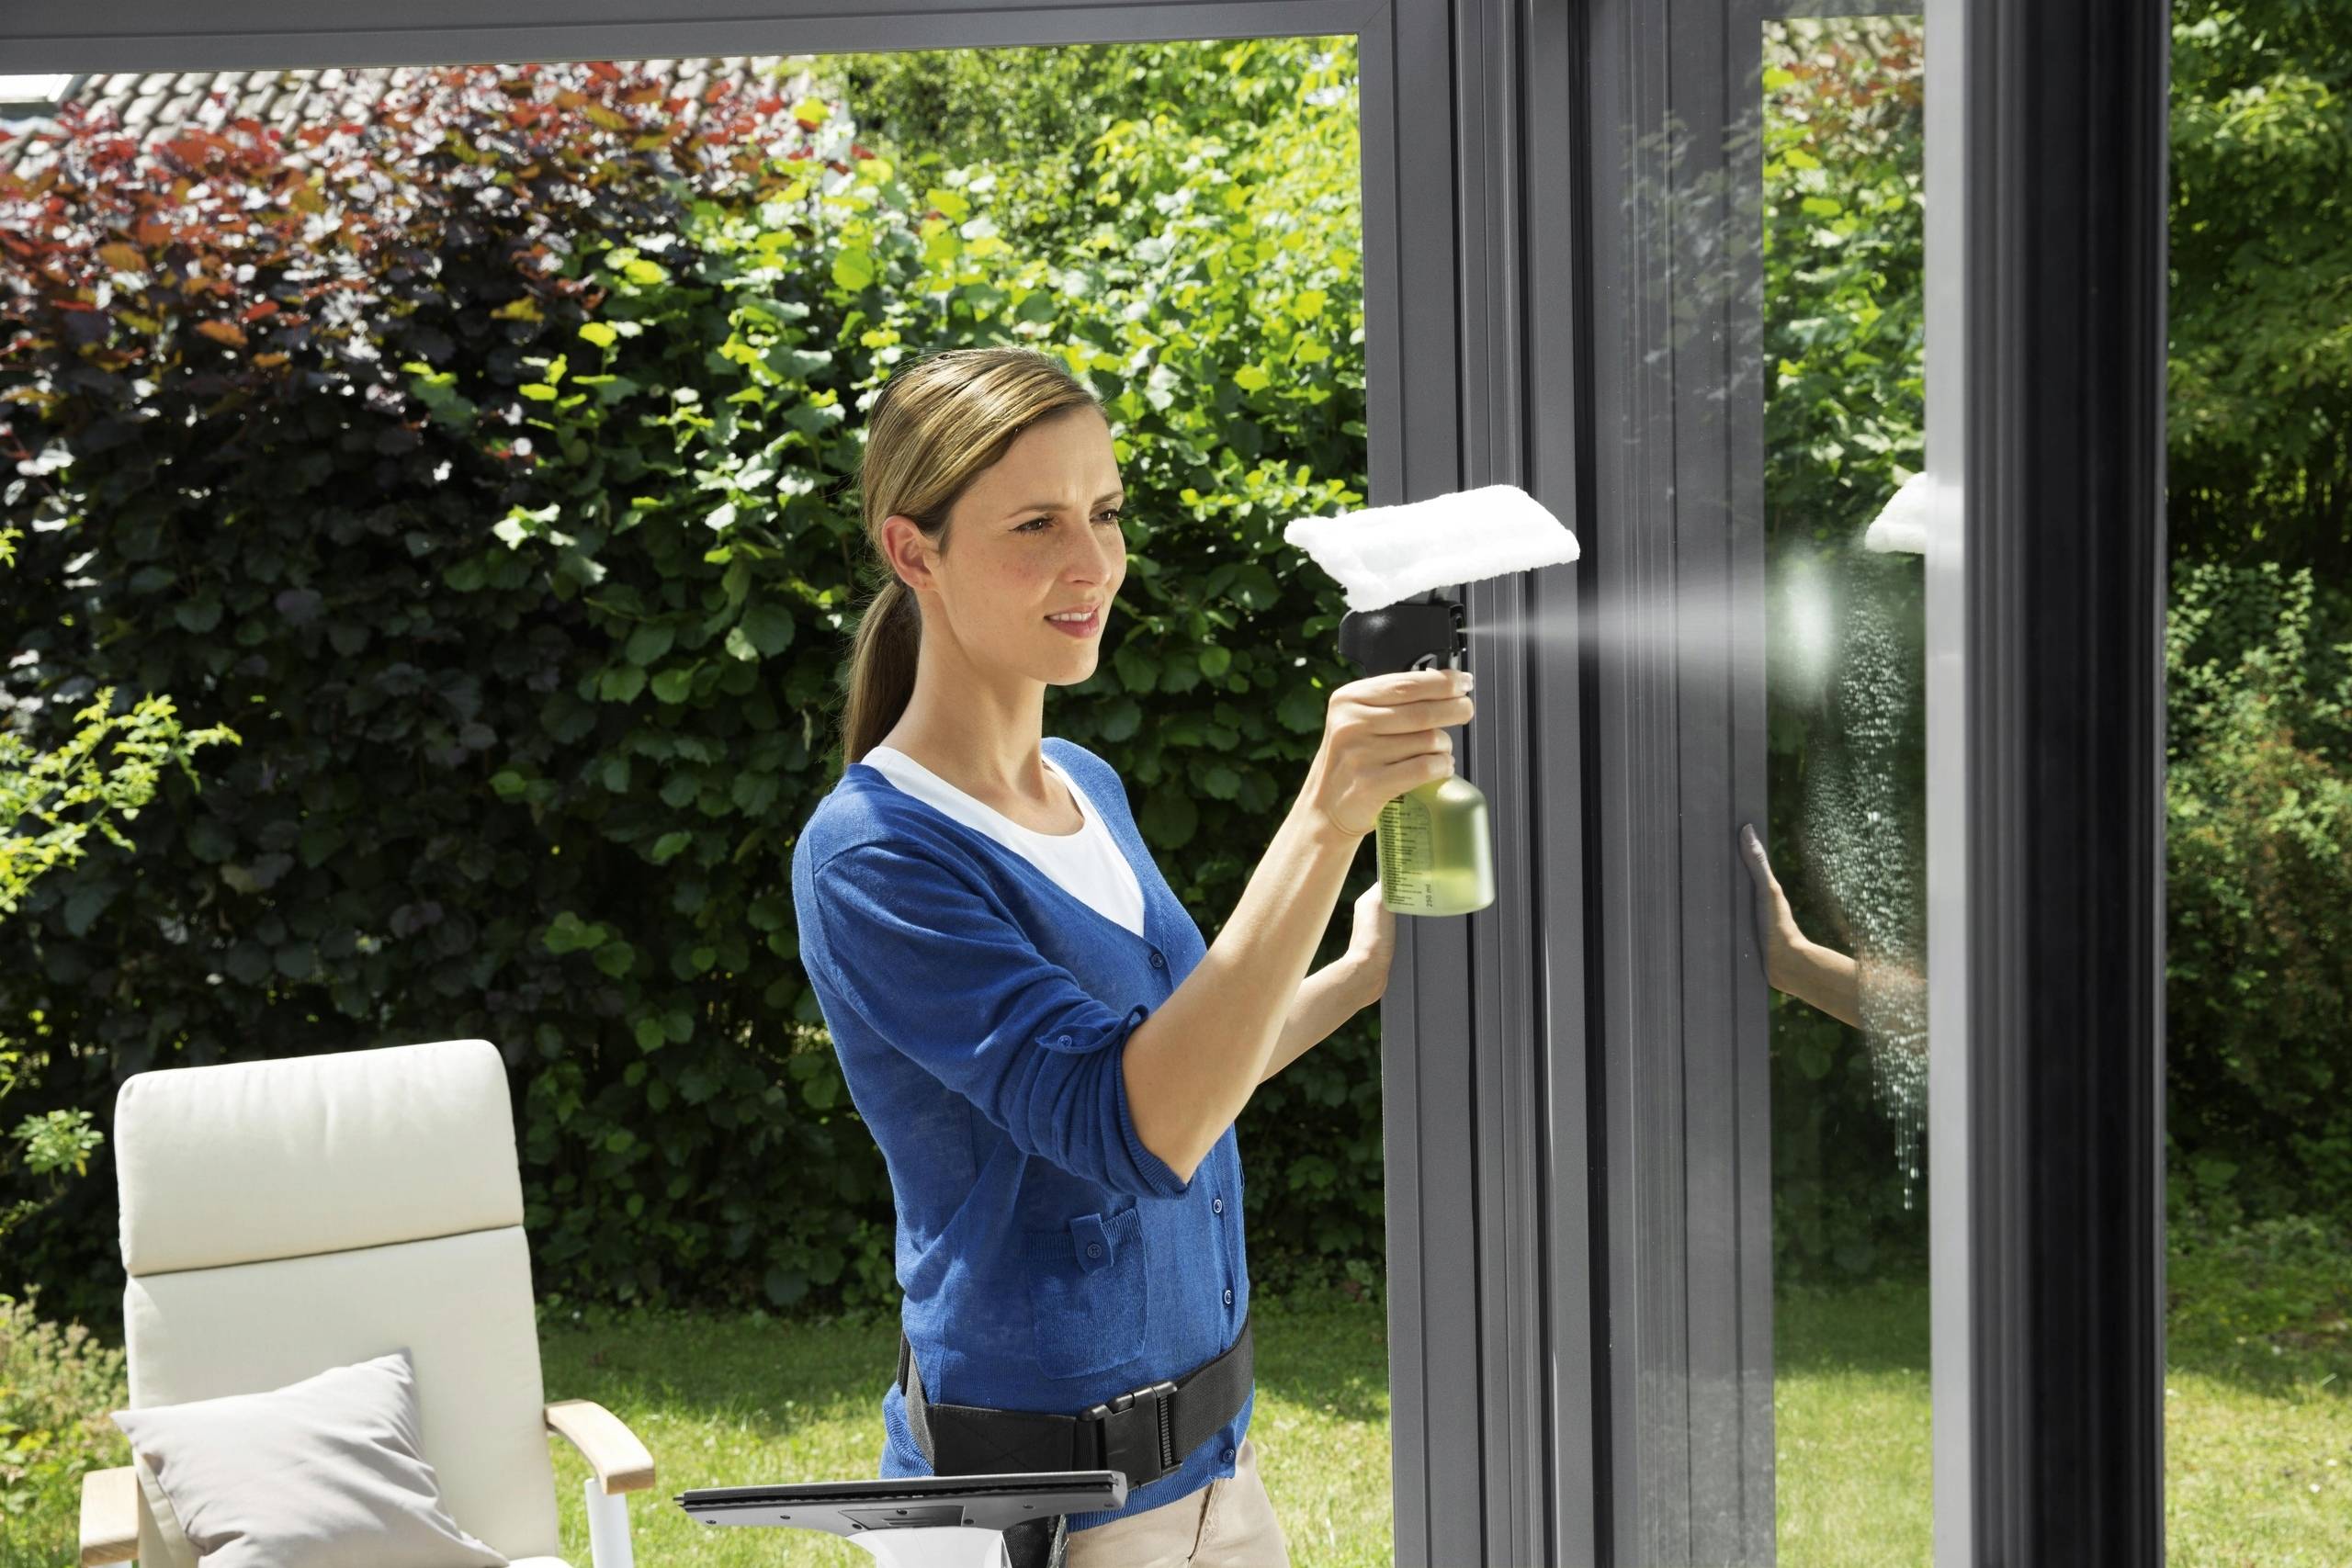 Как помыть окна без разводов: советы опытных хозяек